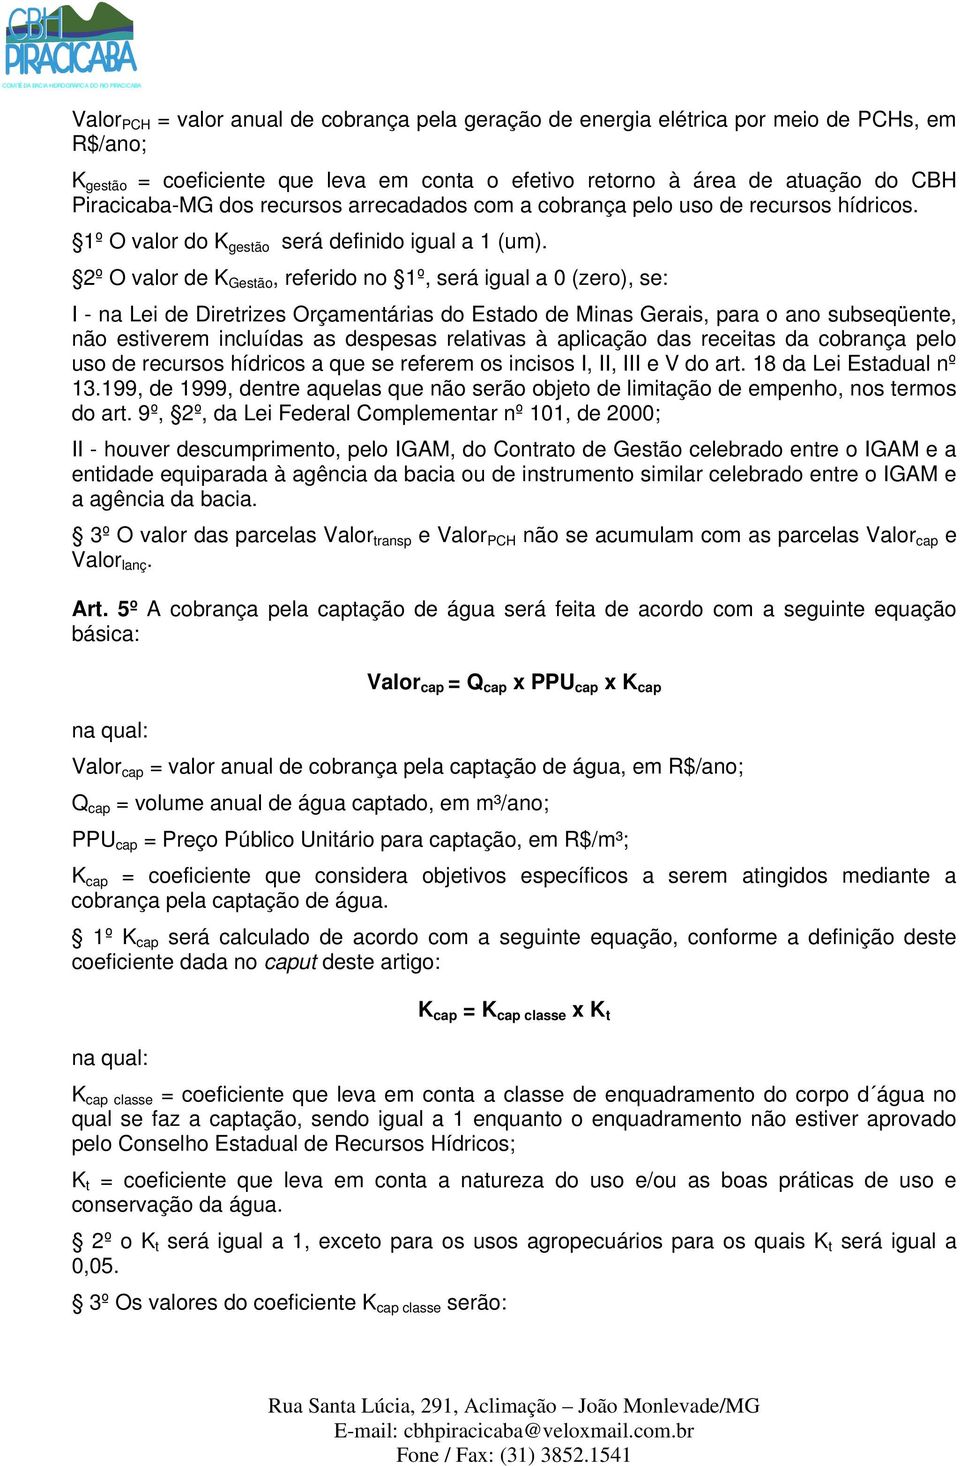 2º O valor de K Gestão, referido no 1º, será igual a 0 (zero), se: I - na Lei de Diretrizes Orçamentárias do Estado de Minas Gerais, para o ano subseqüente, não estiverem incluídas as despesas